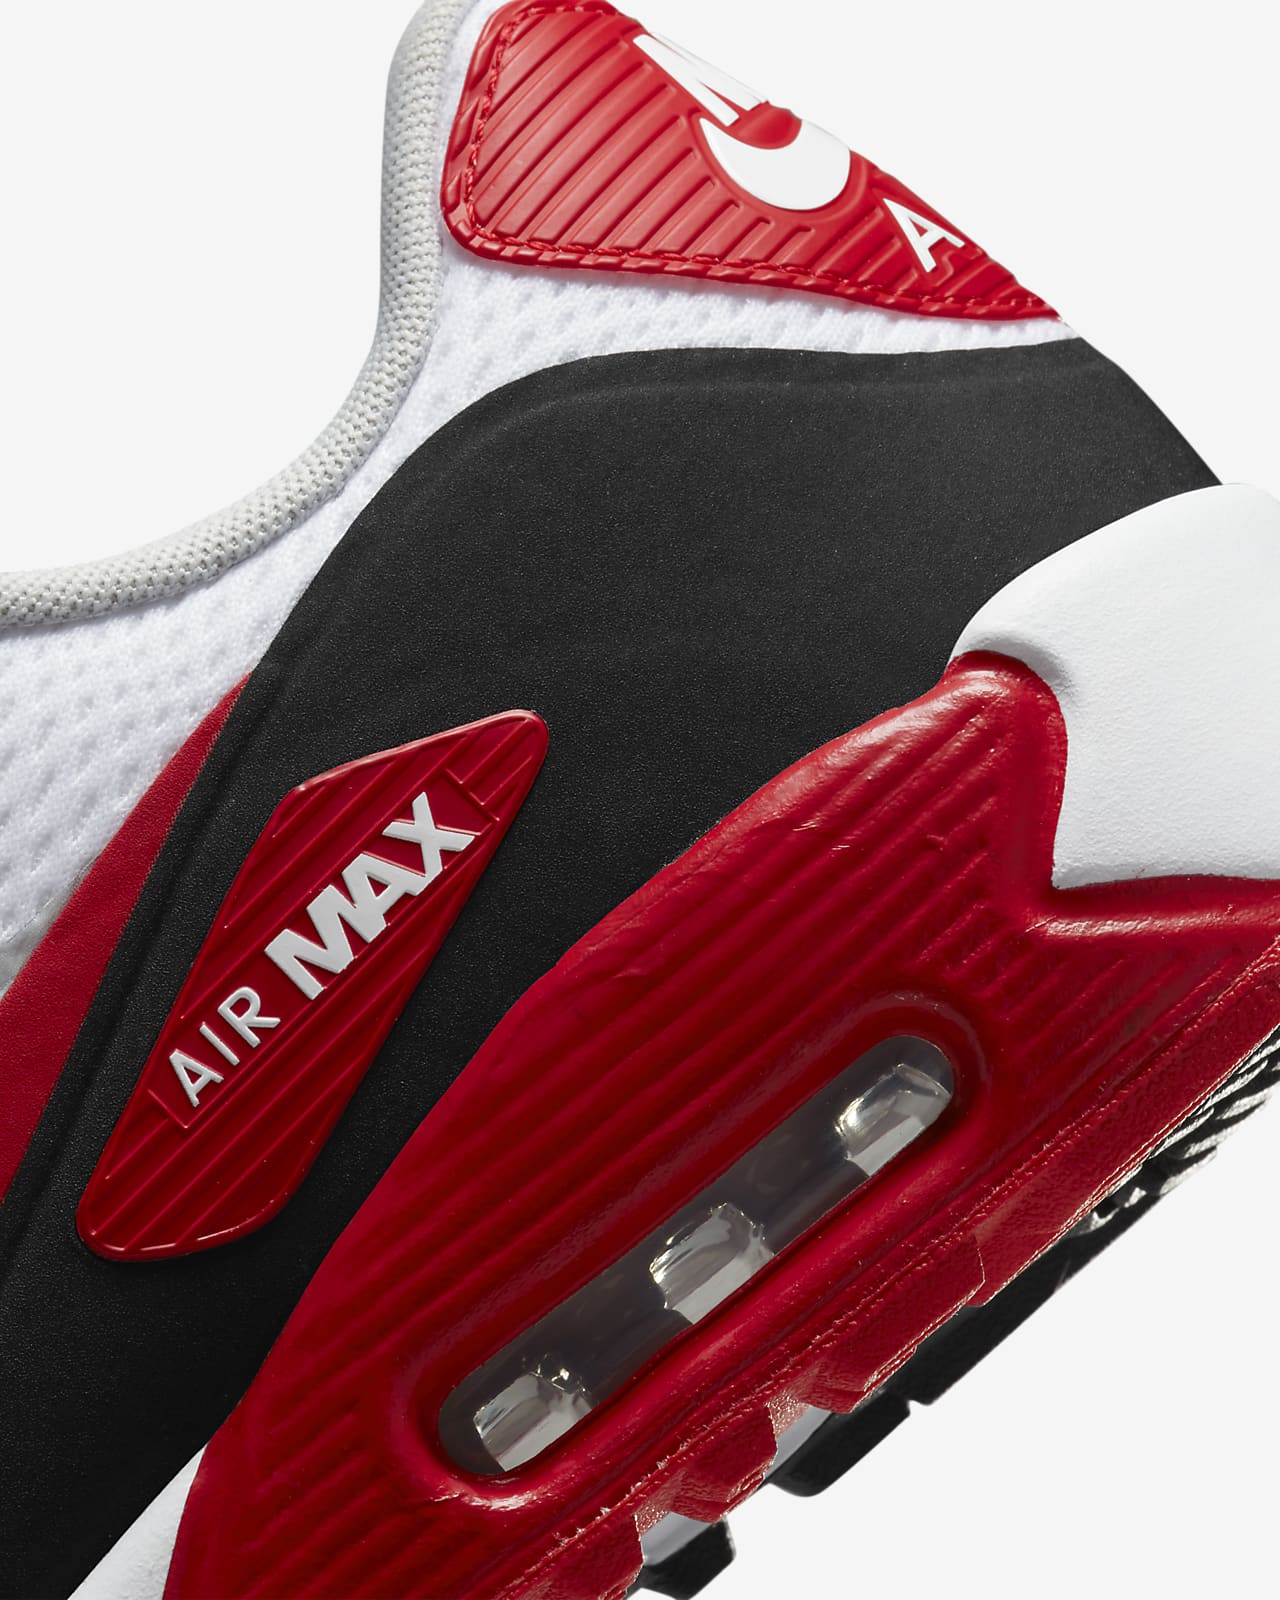 Nike Air Max 90 G Golf Shoes